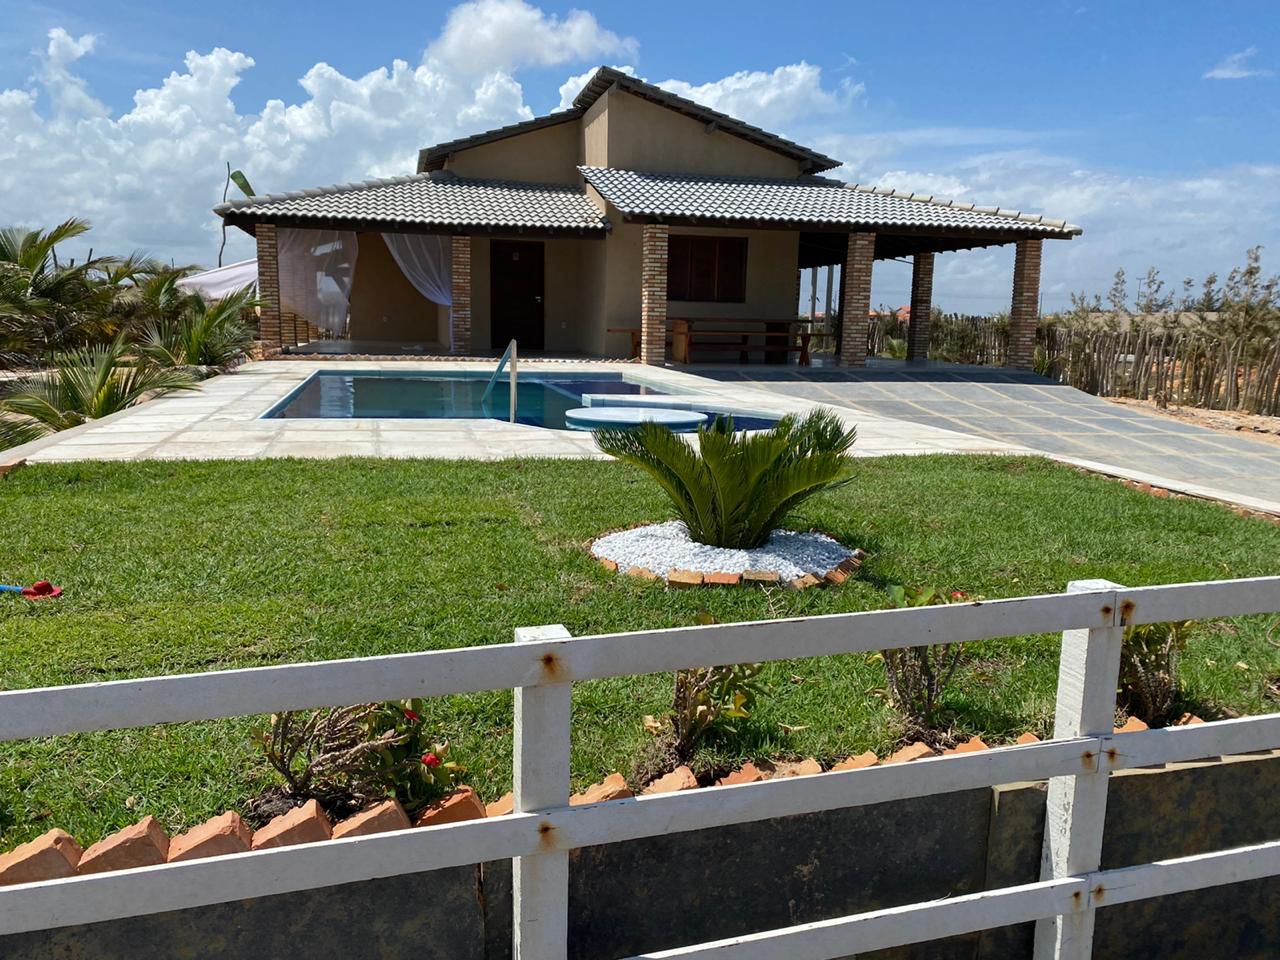 No momento você está vendo Casas de praia para alugar em Luís Correia Piauí